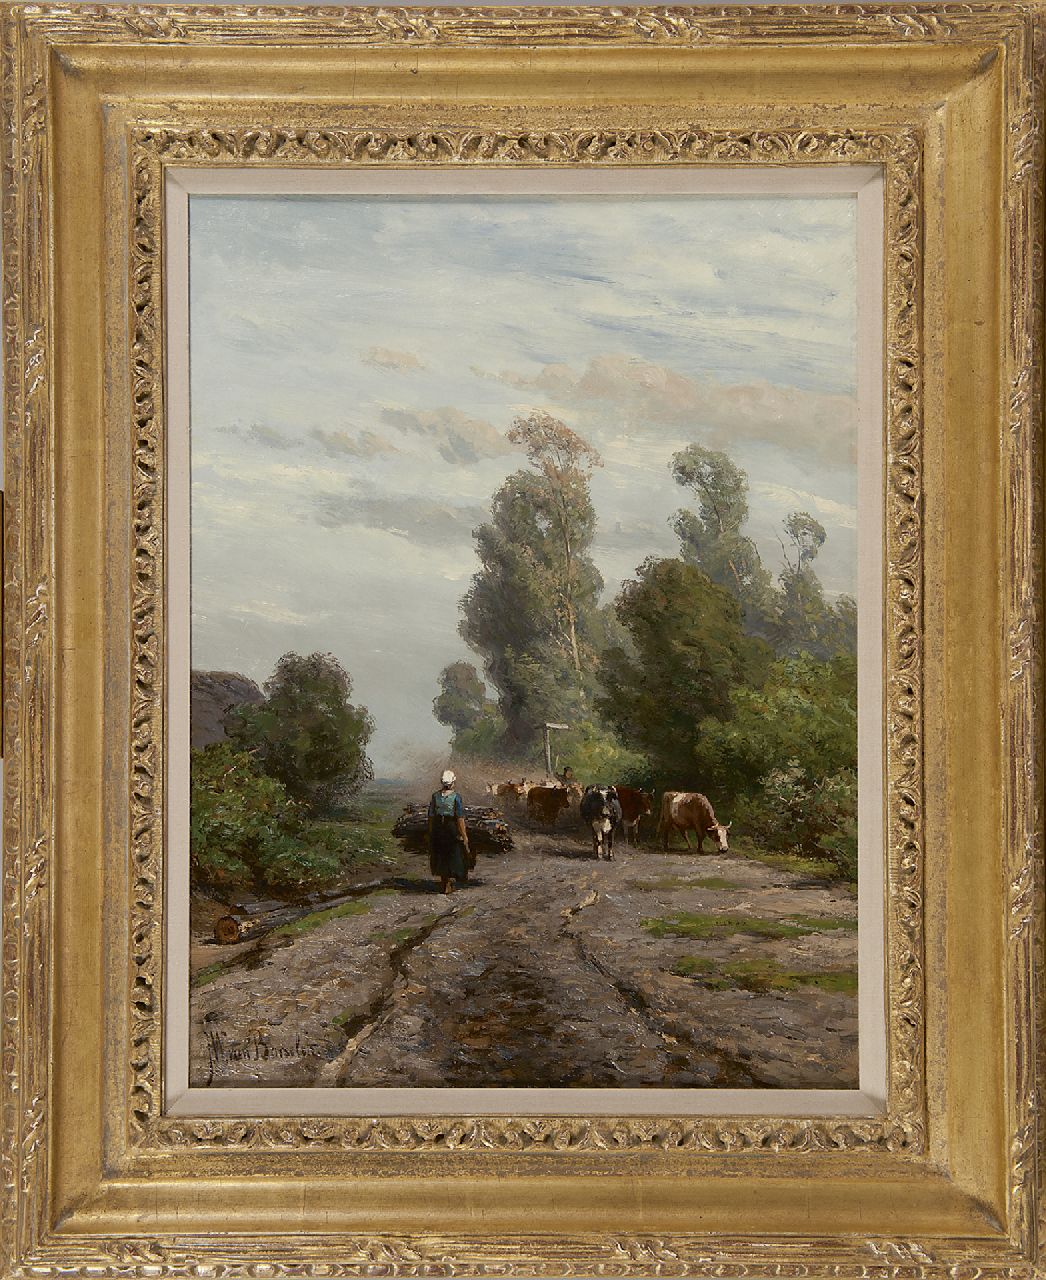 Borselen J.W. van | Jan Willem van Borselen, Zomerlandschap met koeherder en kudde, olieverf op doek 40,9 x 31,0 cm, gesigneerd linksonder